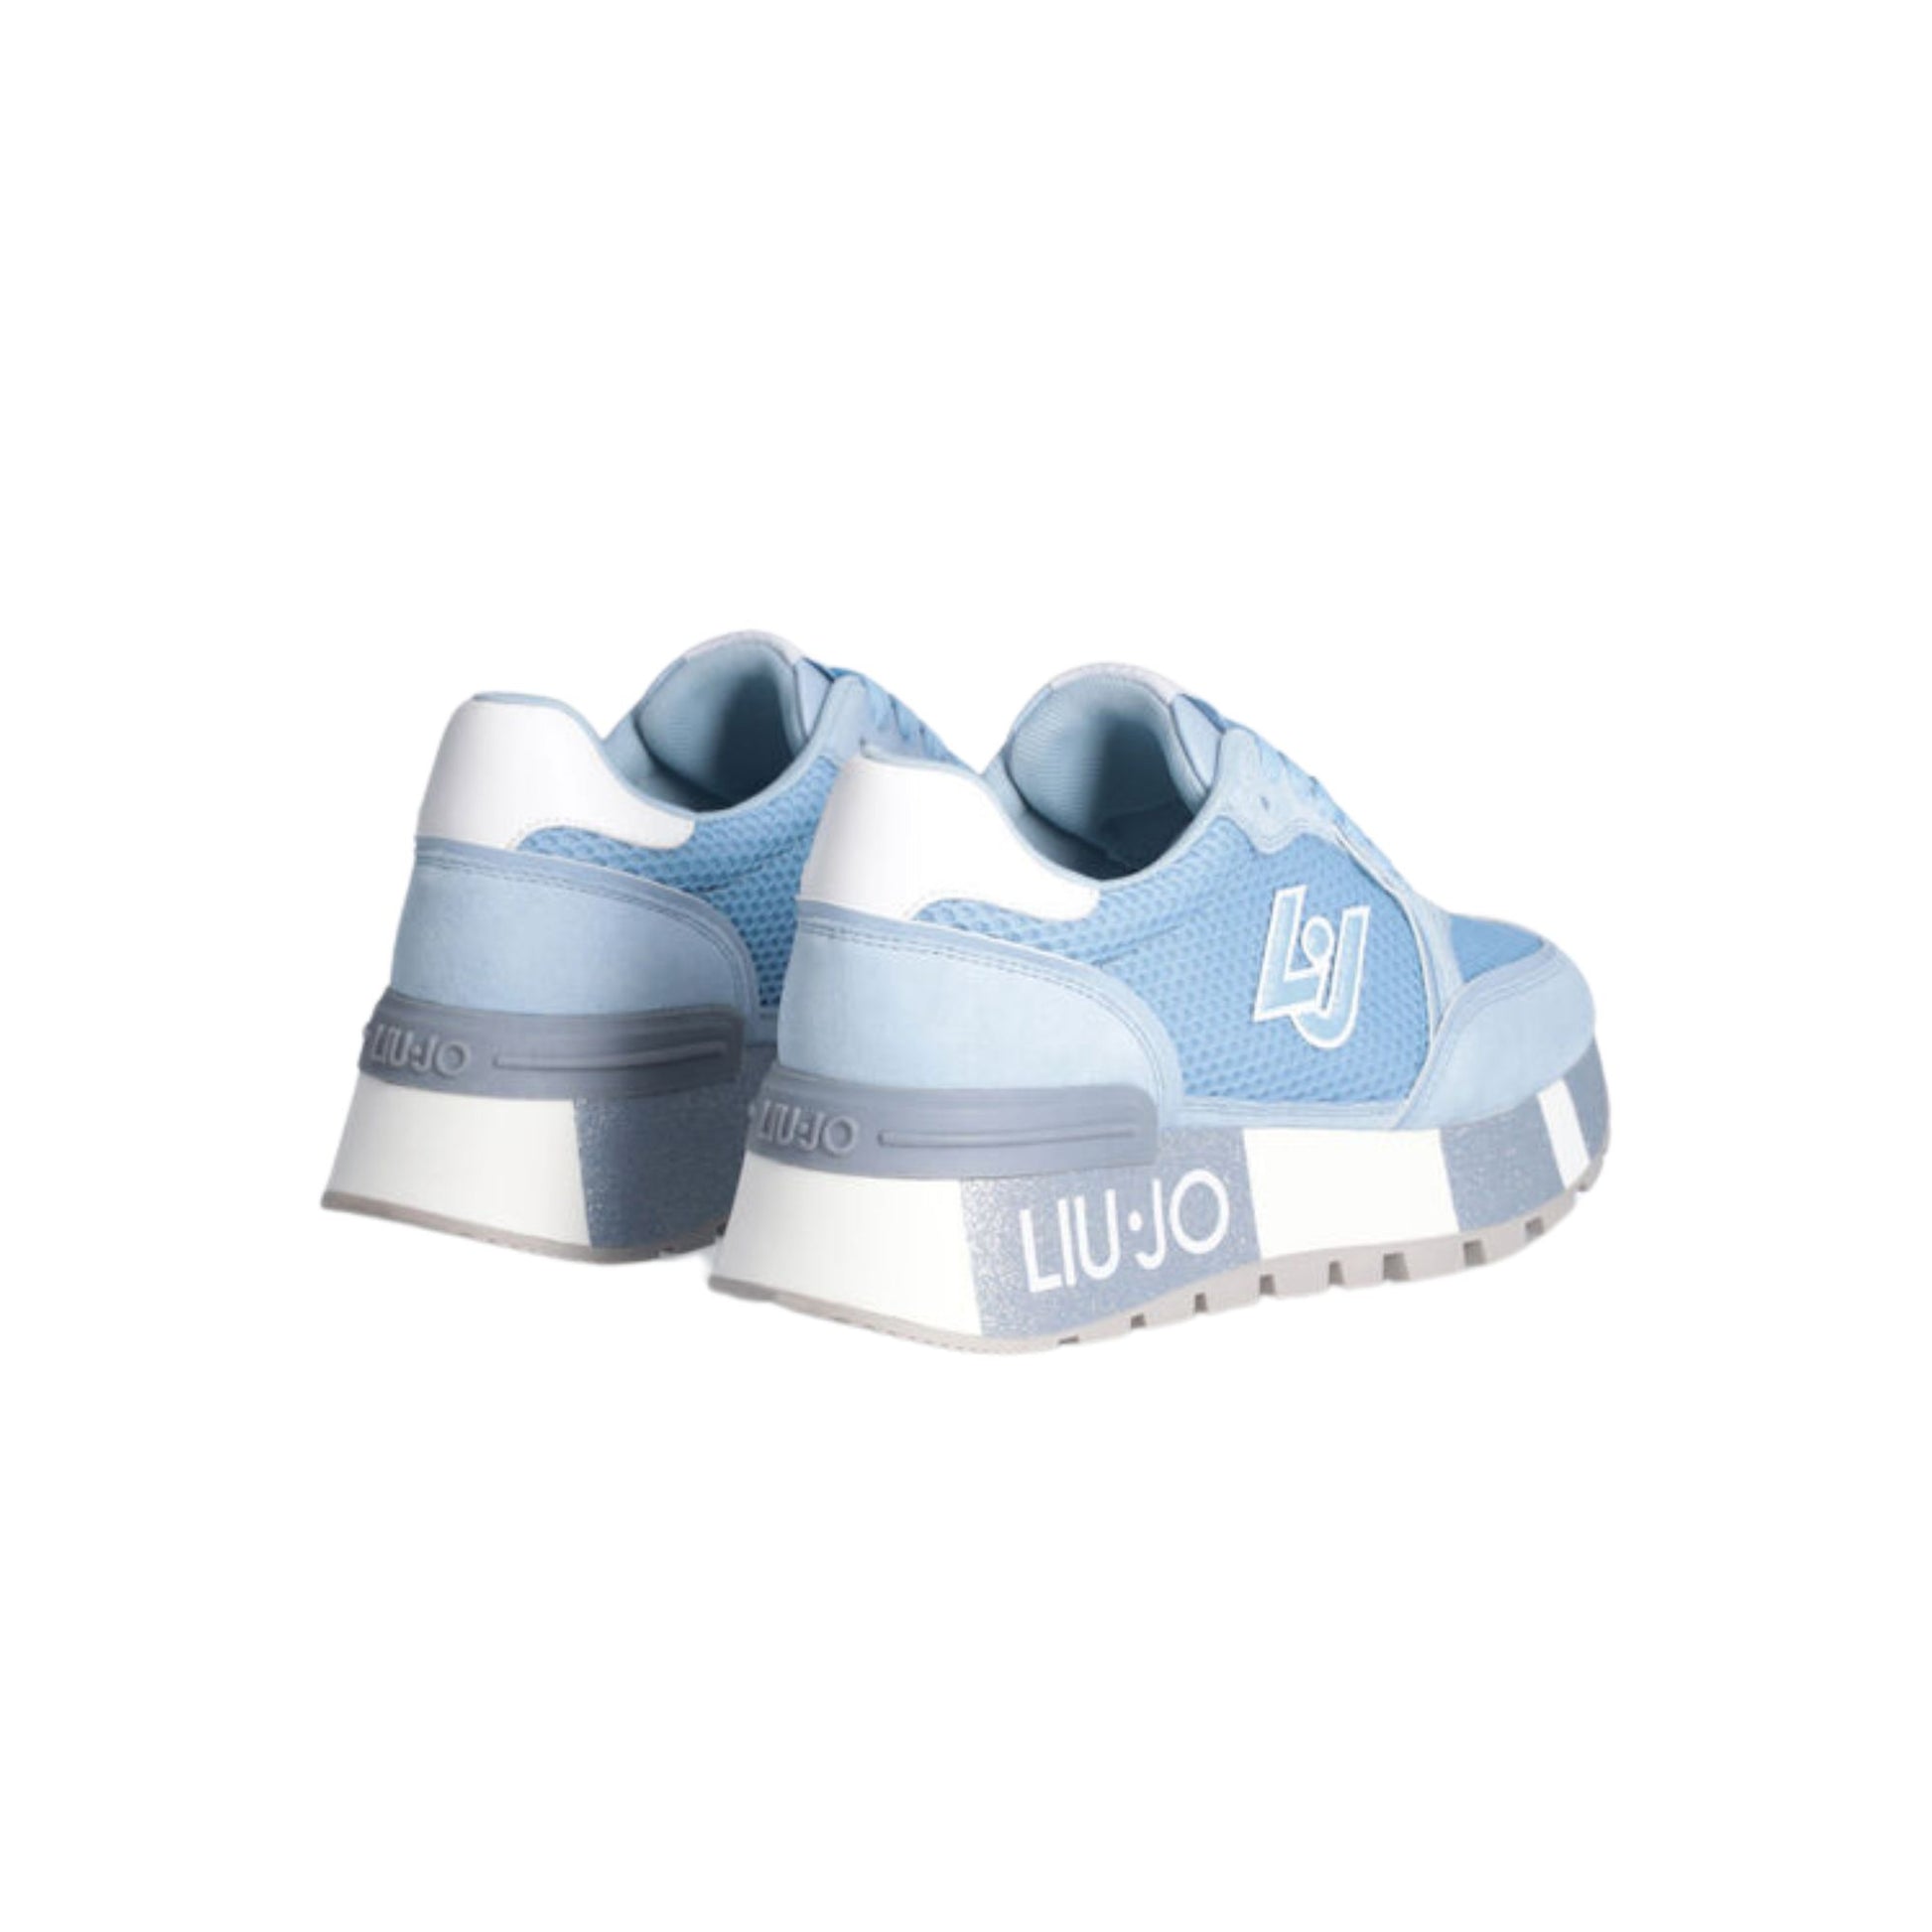 Retro Sneakers con platform glitterata colore Azzurro